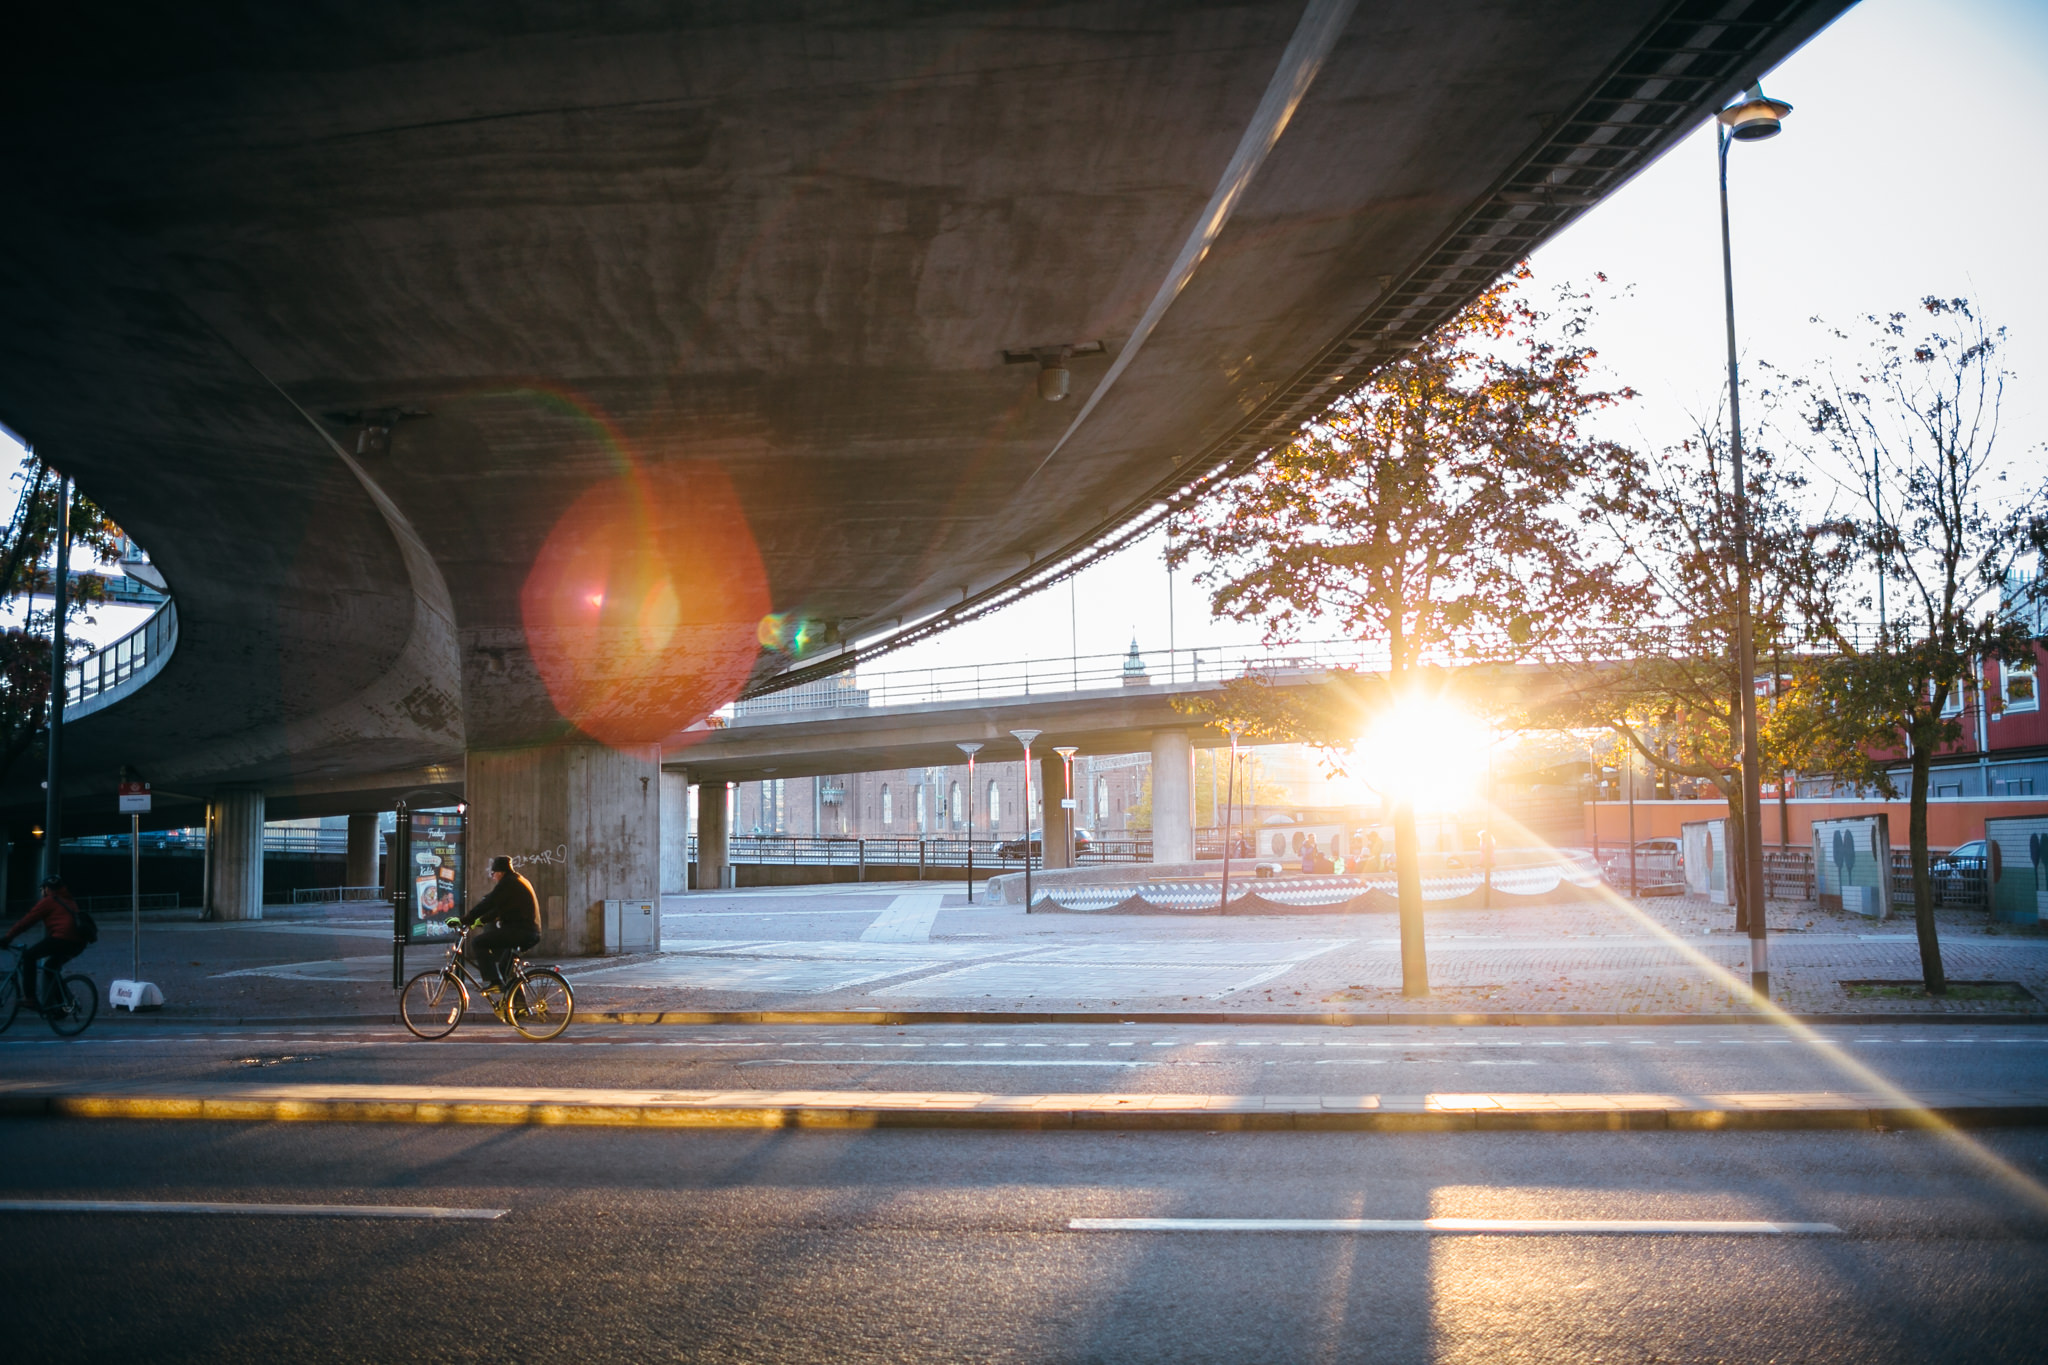 Low sun shining under a concrete bridge